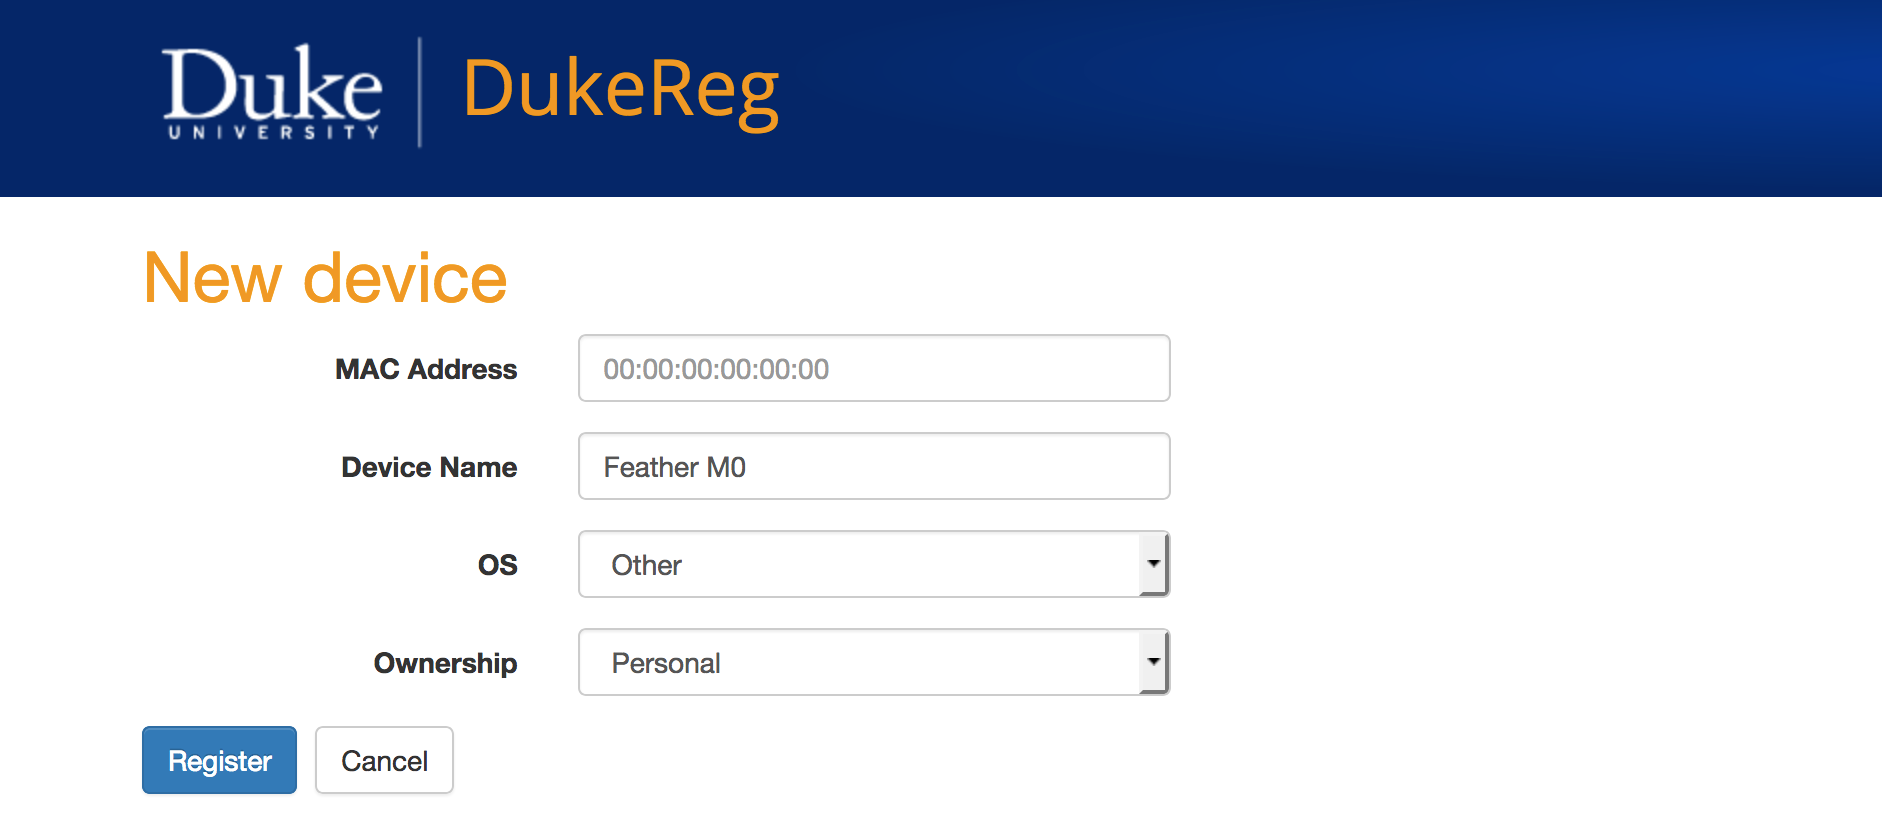 Image of DukeReg registration form